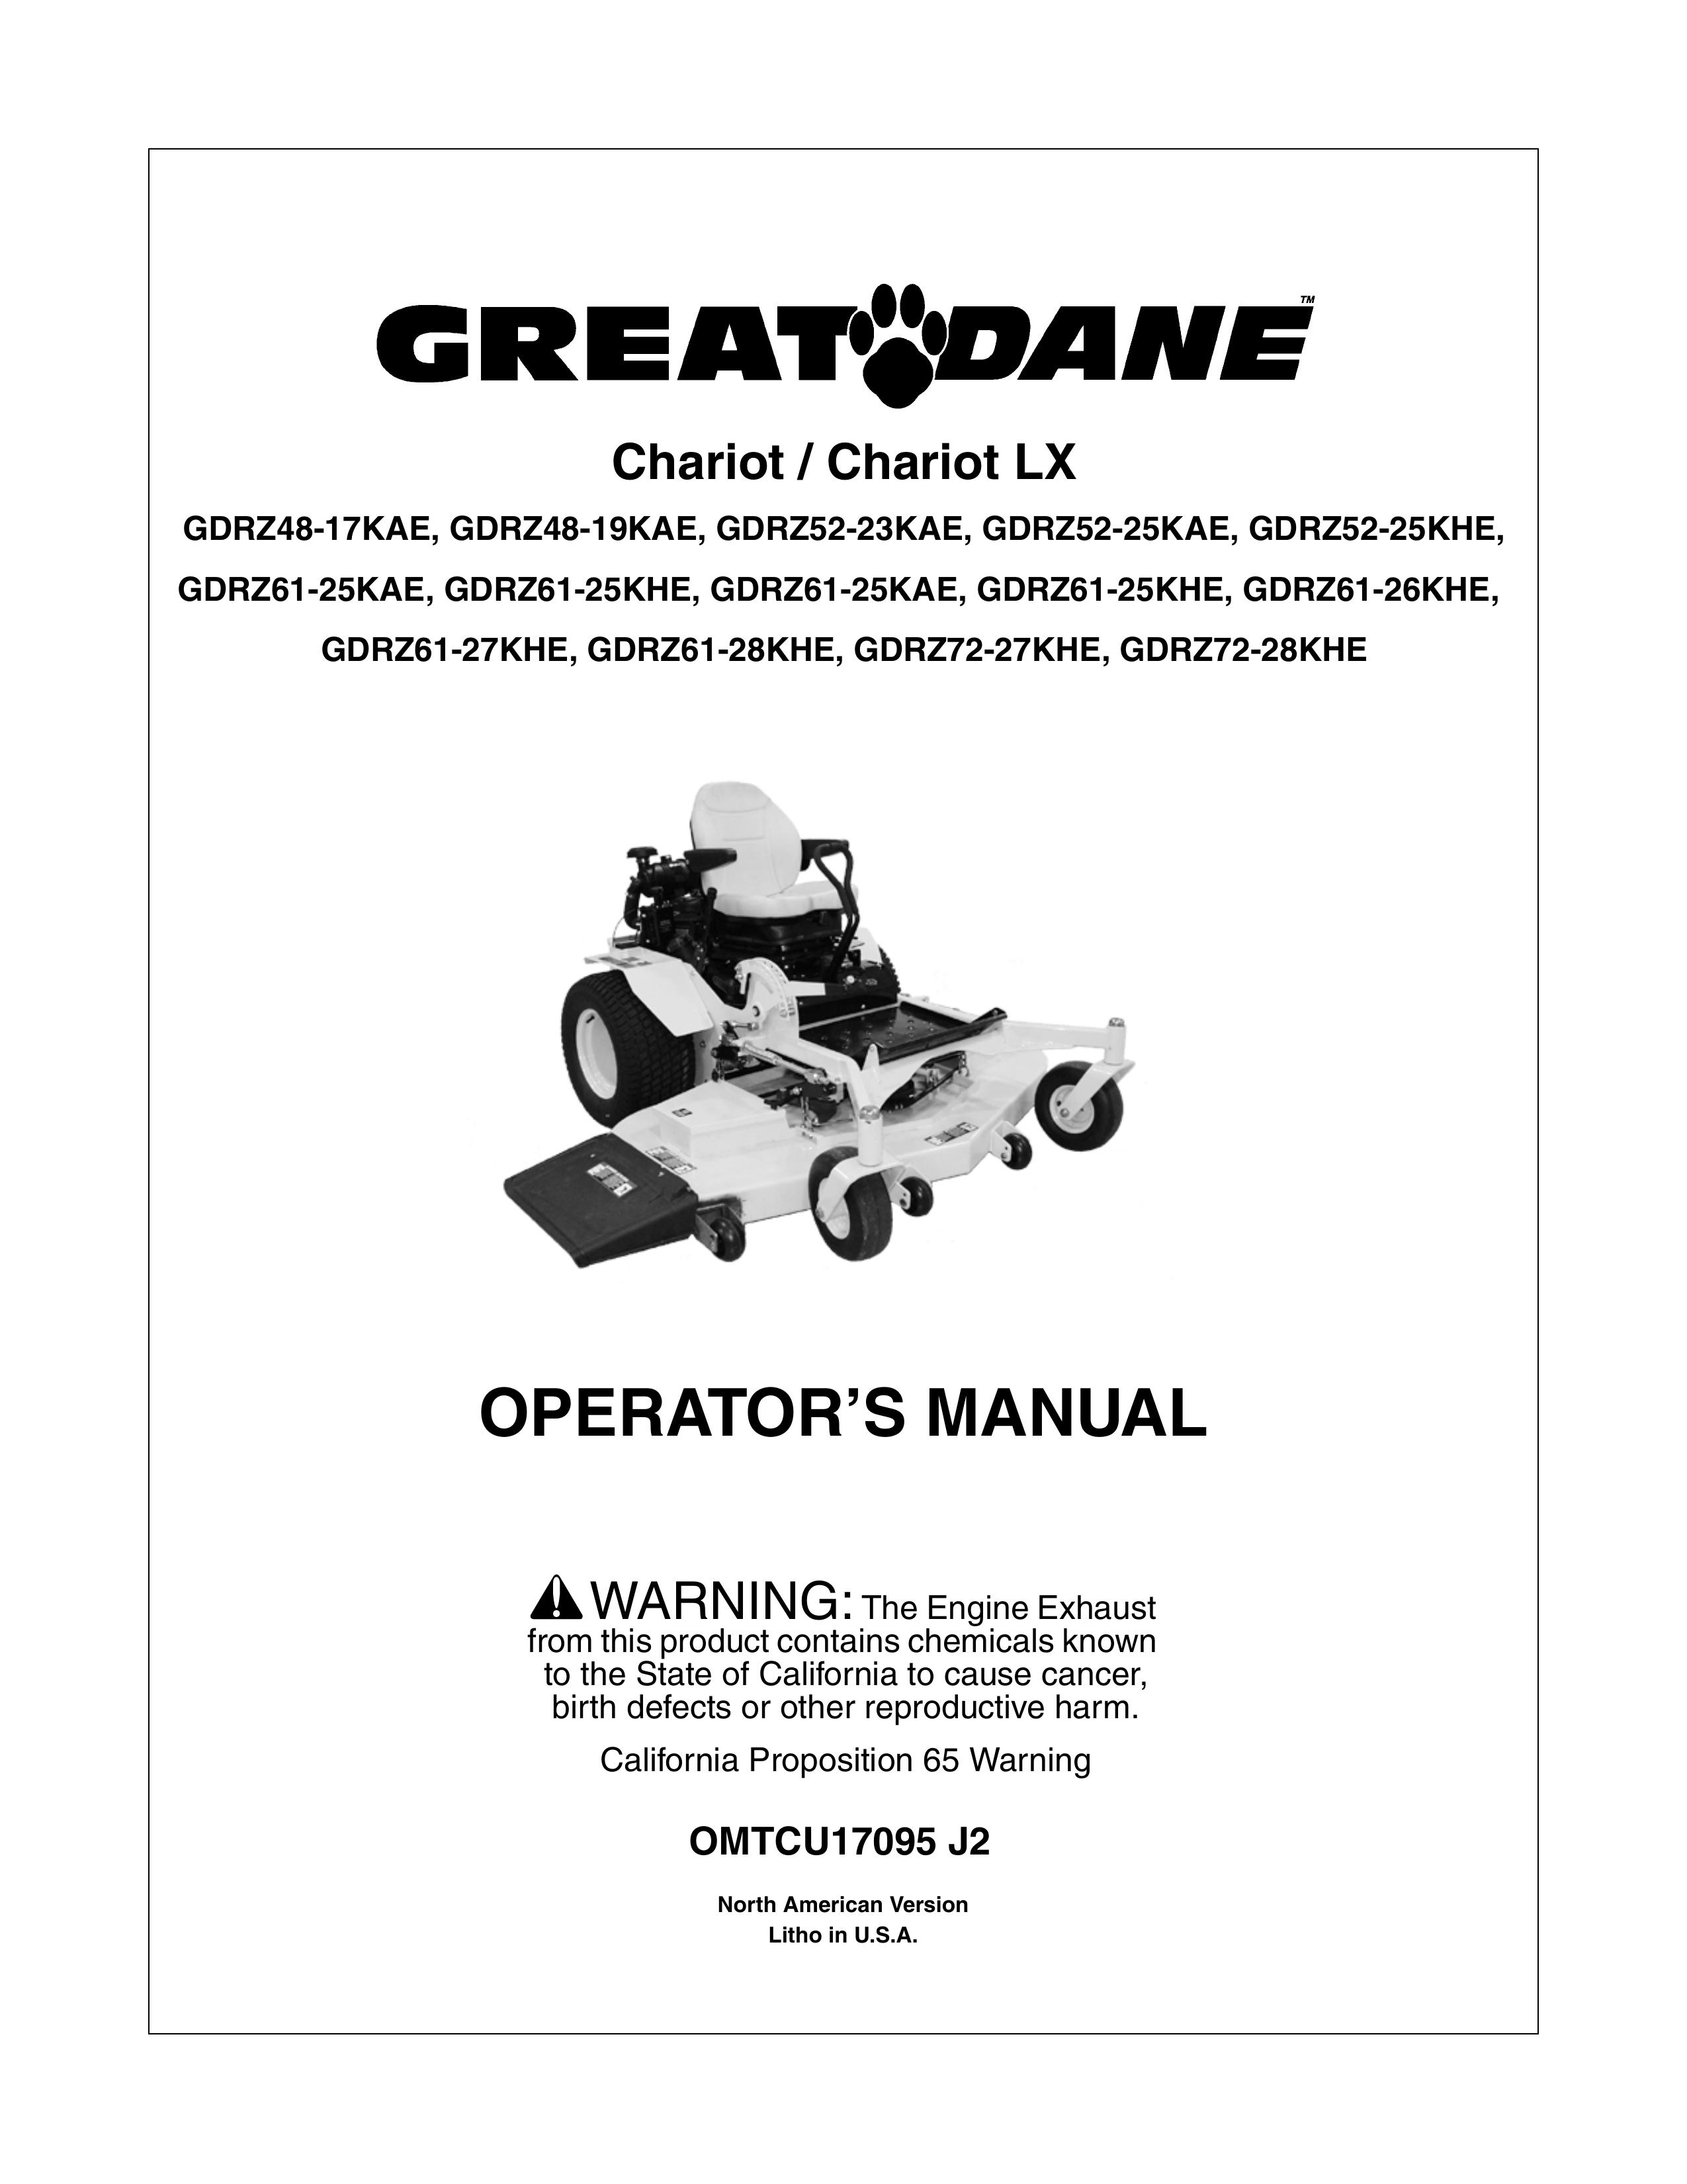 Great Dane GDRZ61-25KAE Lawn Mower User Manual